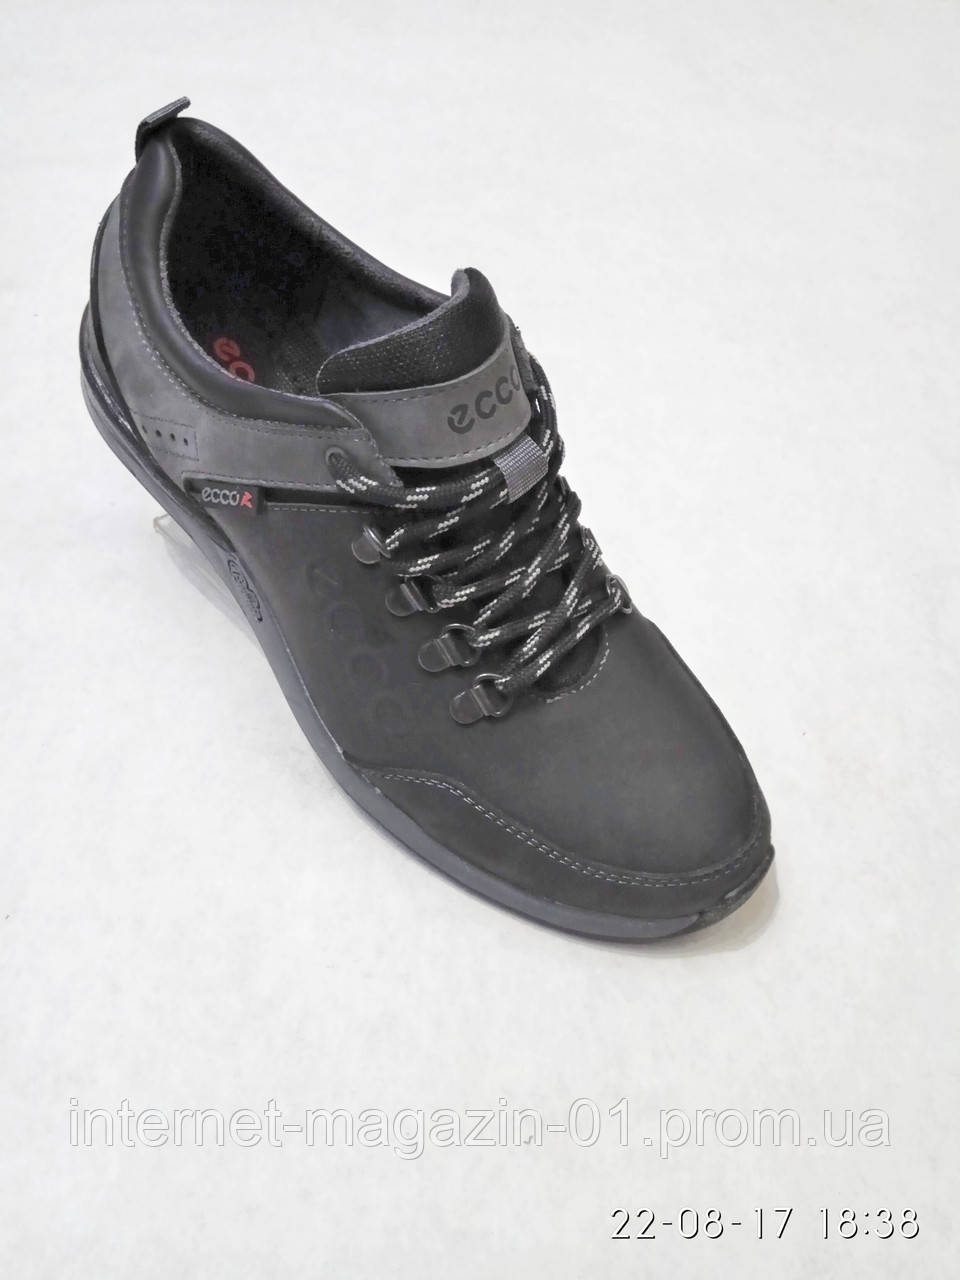 Шкіряні чоловічі спортивні туфлі чорні ecco b52